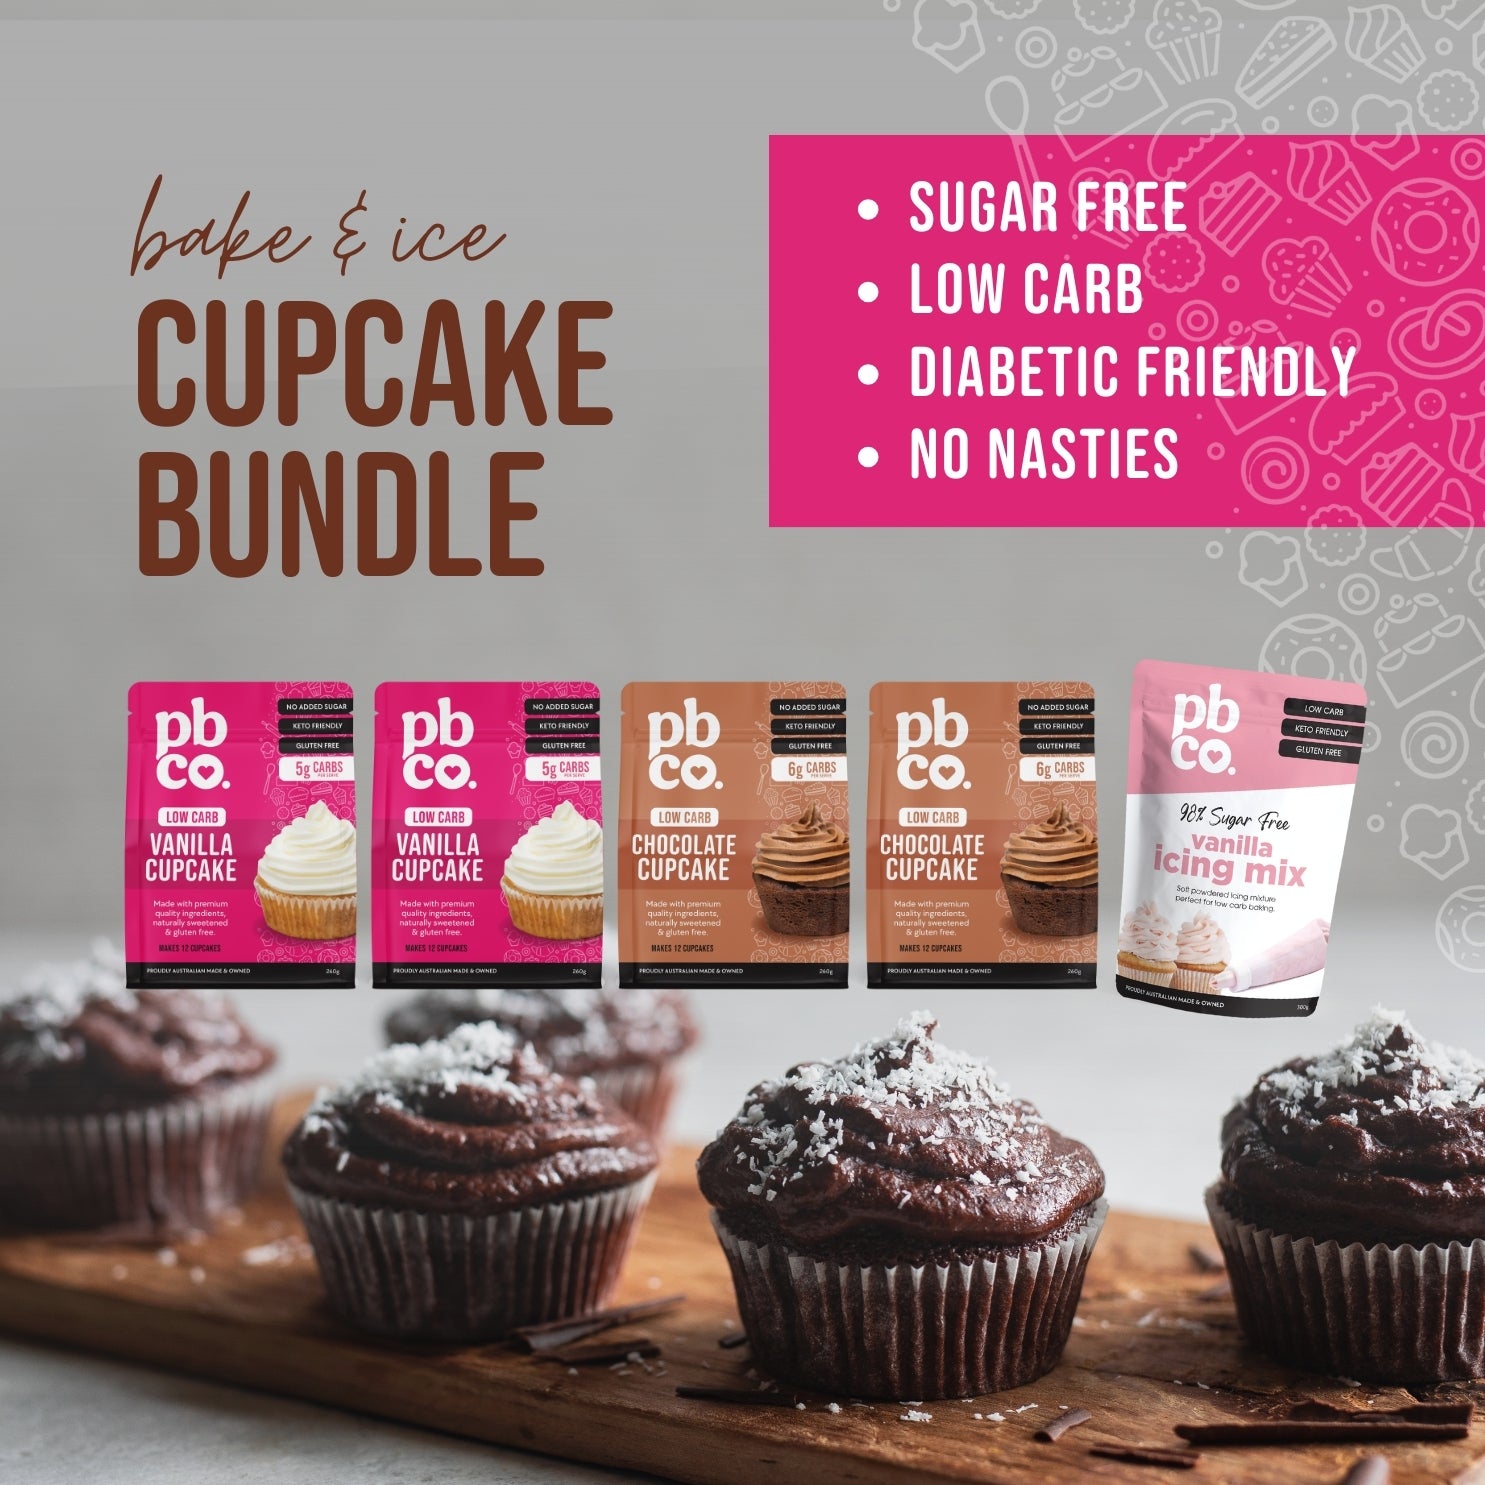 'Bake & Ice' Low Carb Cupcake Bundle - Low carb & sugar free Bundle - Just $45.32! Shop now at PBCo.